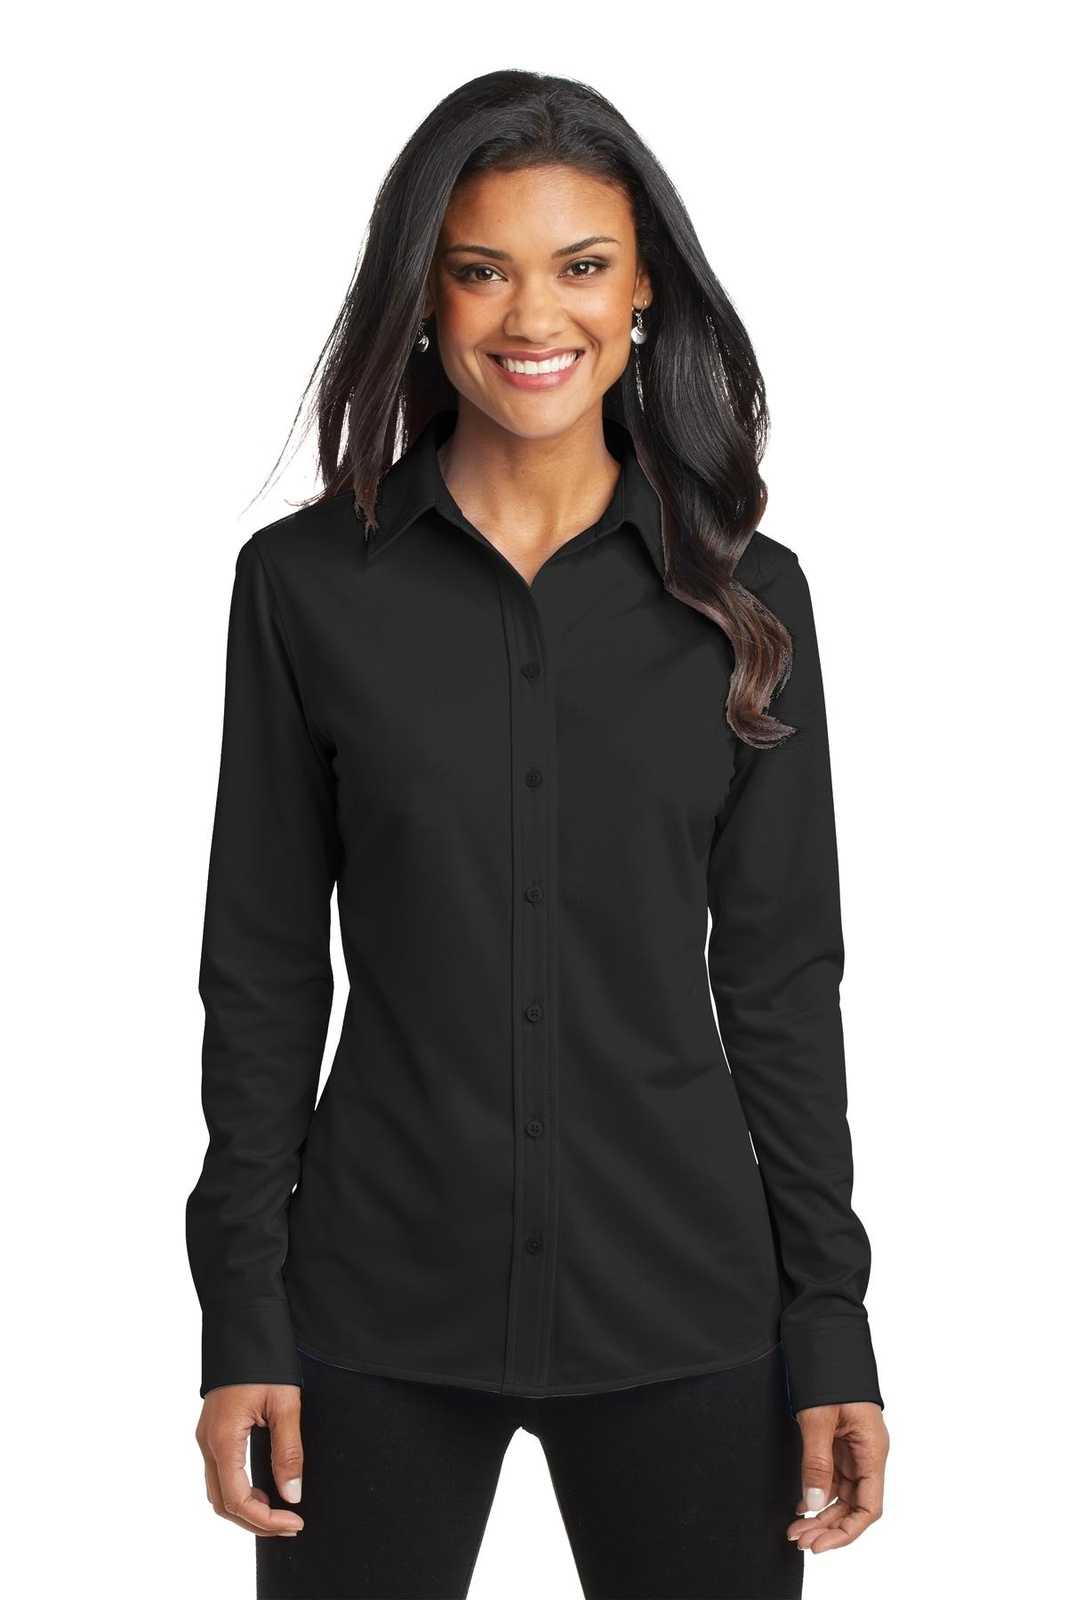 Port Authority L570 Ladies Dimension Knit Dress Shirt - Black - HIT a Double - 1